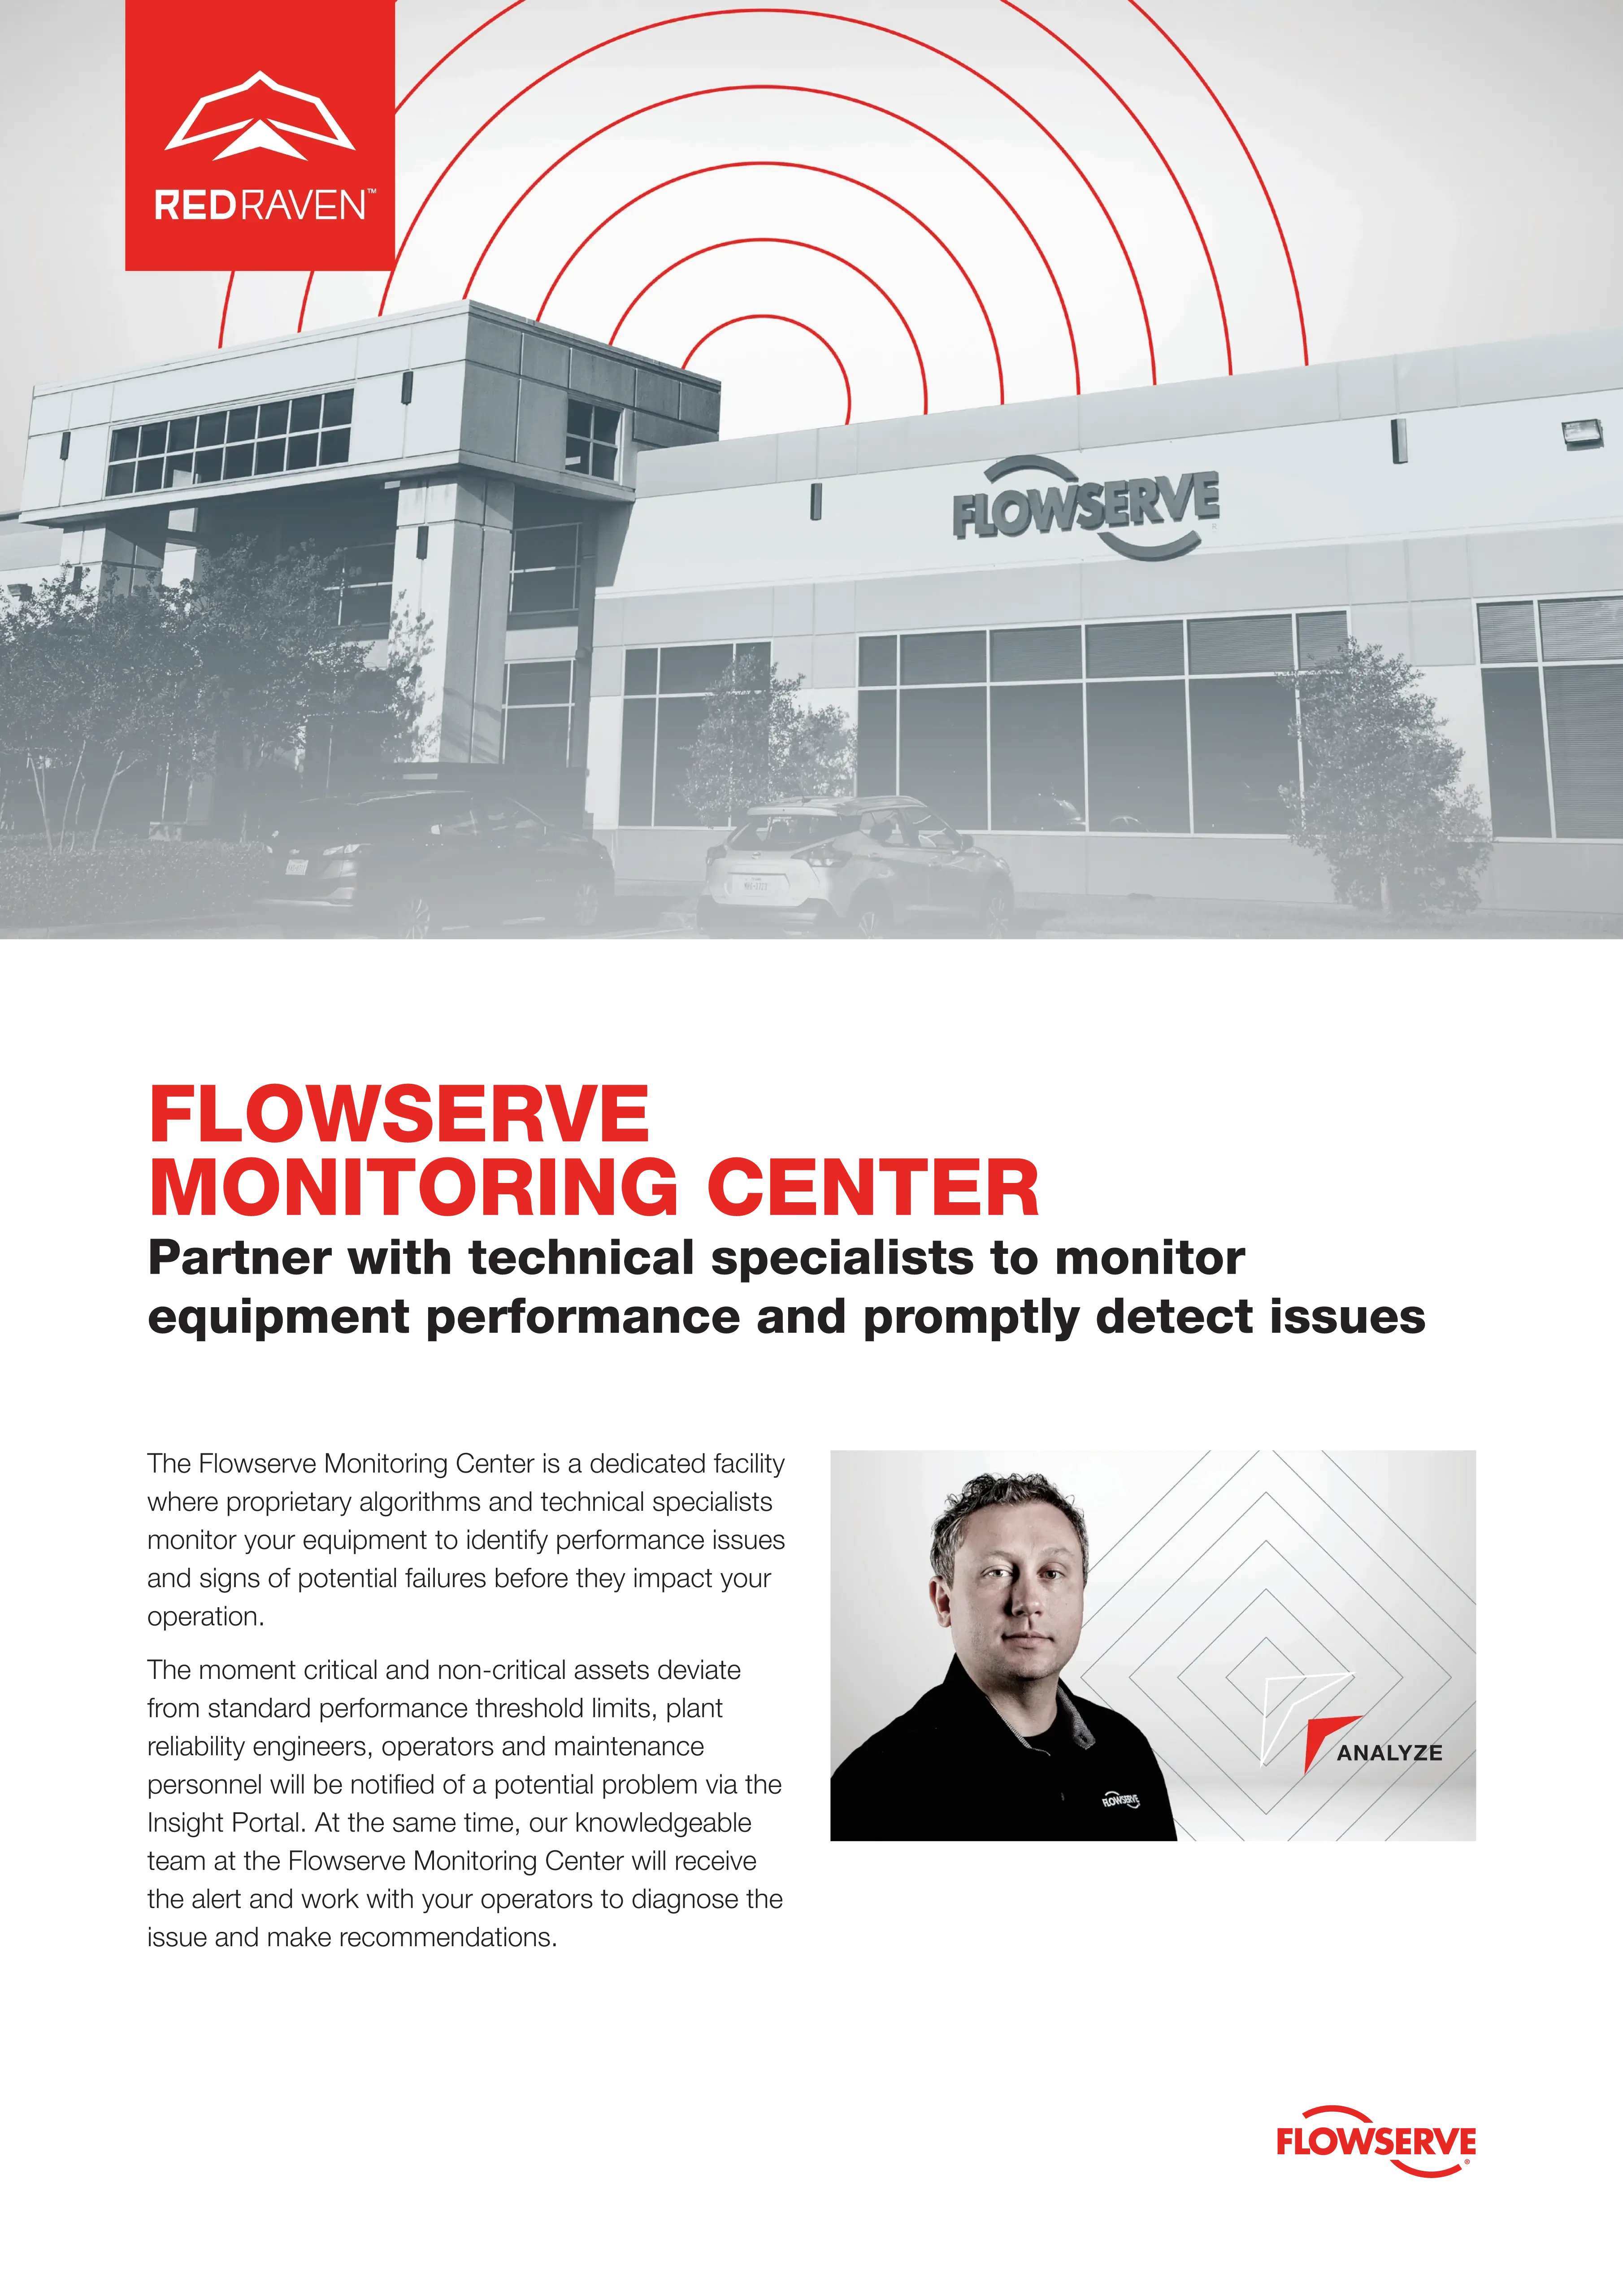 Flowserve Monitoring Center宣传单